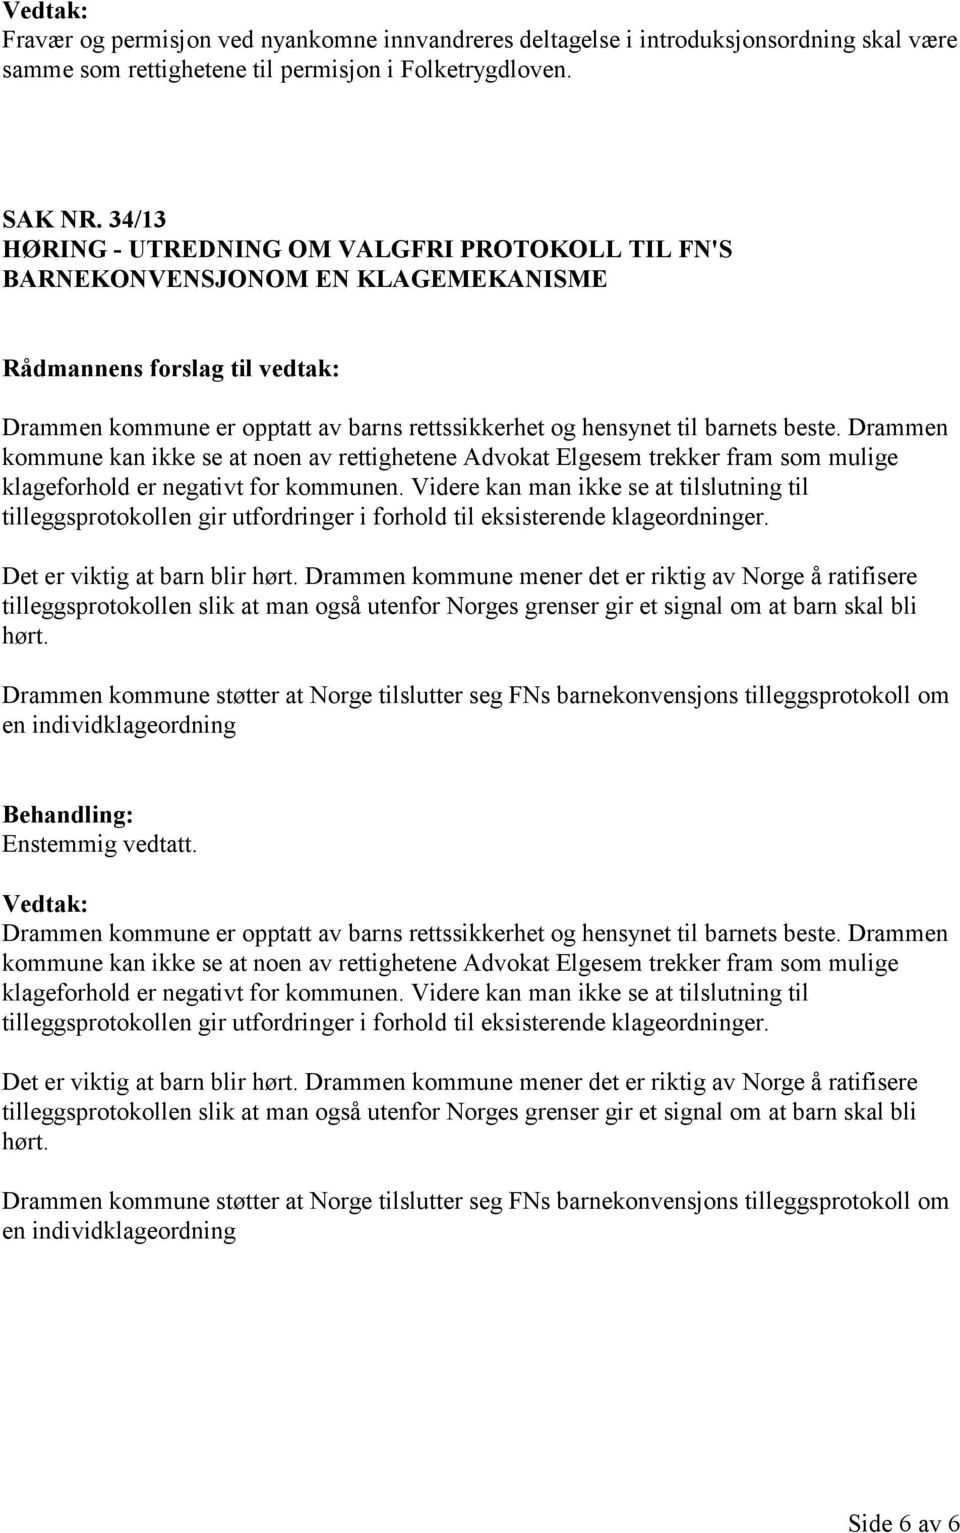 Drammen kommune kan ikke se at noen av rettighetene Advokat Elgesem trekker fram som mulige klageforhold er negativt for kommunen.